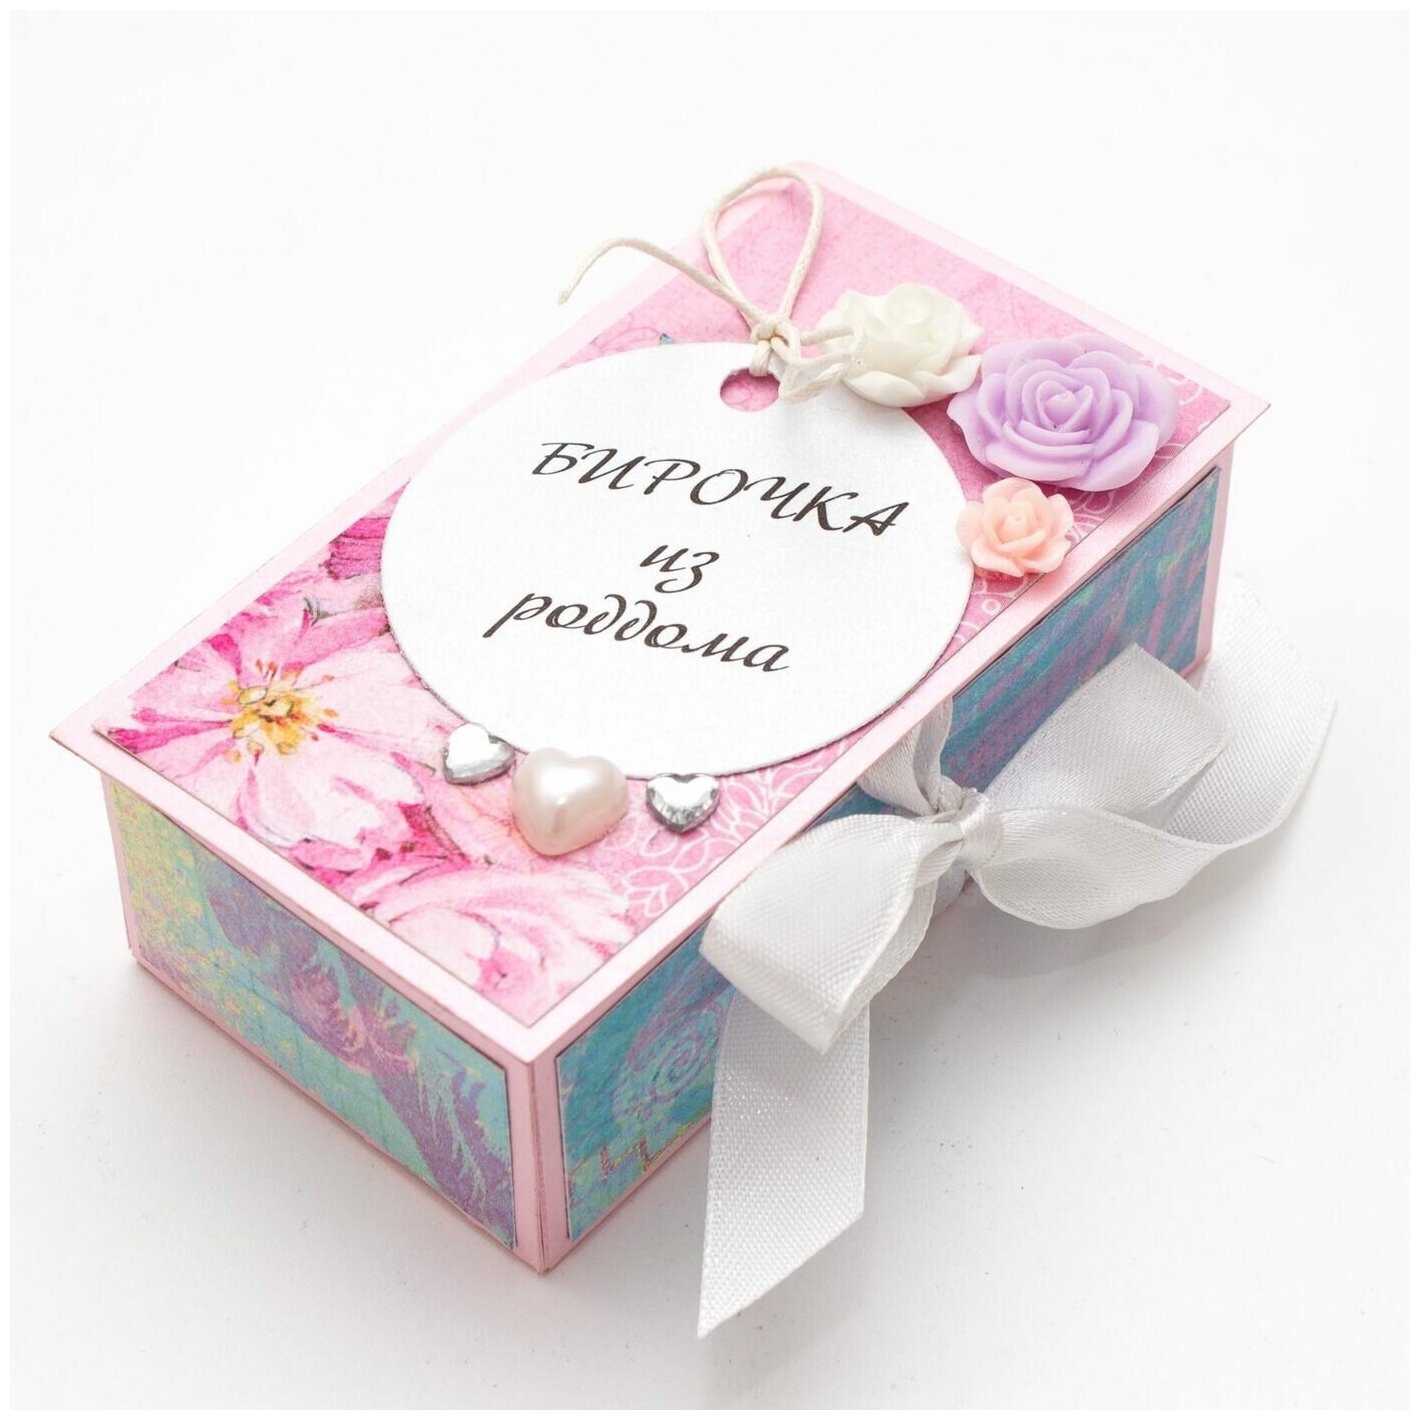 Красивая коробочка для бирки из роддома "Шебби-шик" для новорожденной девочки